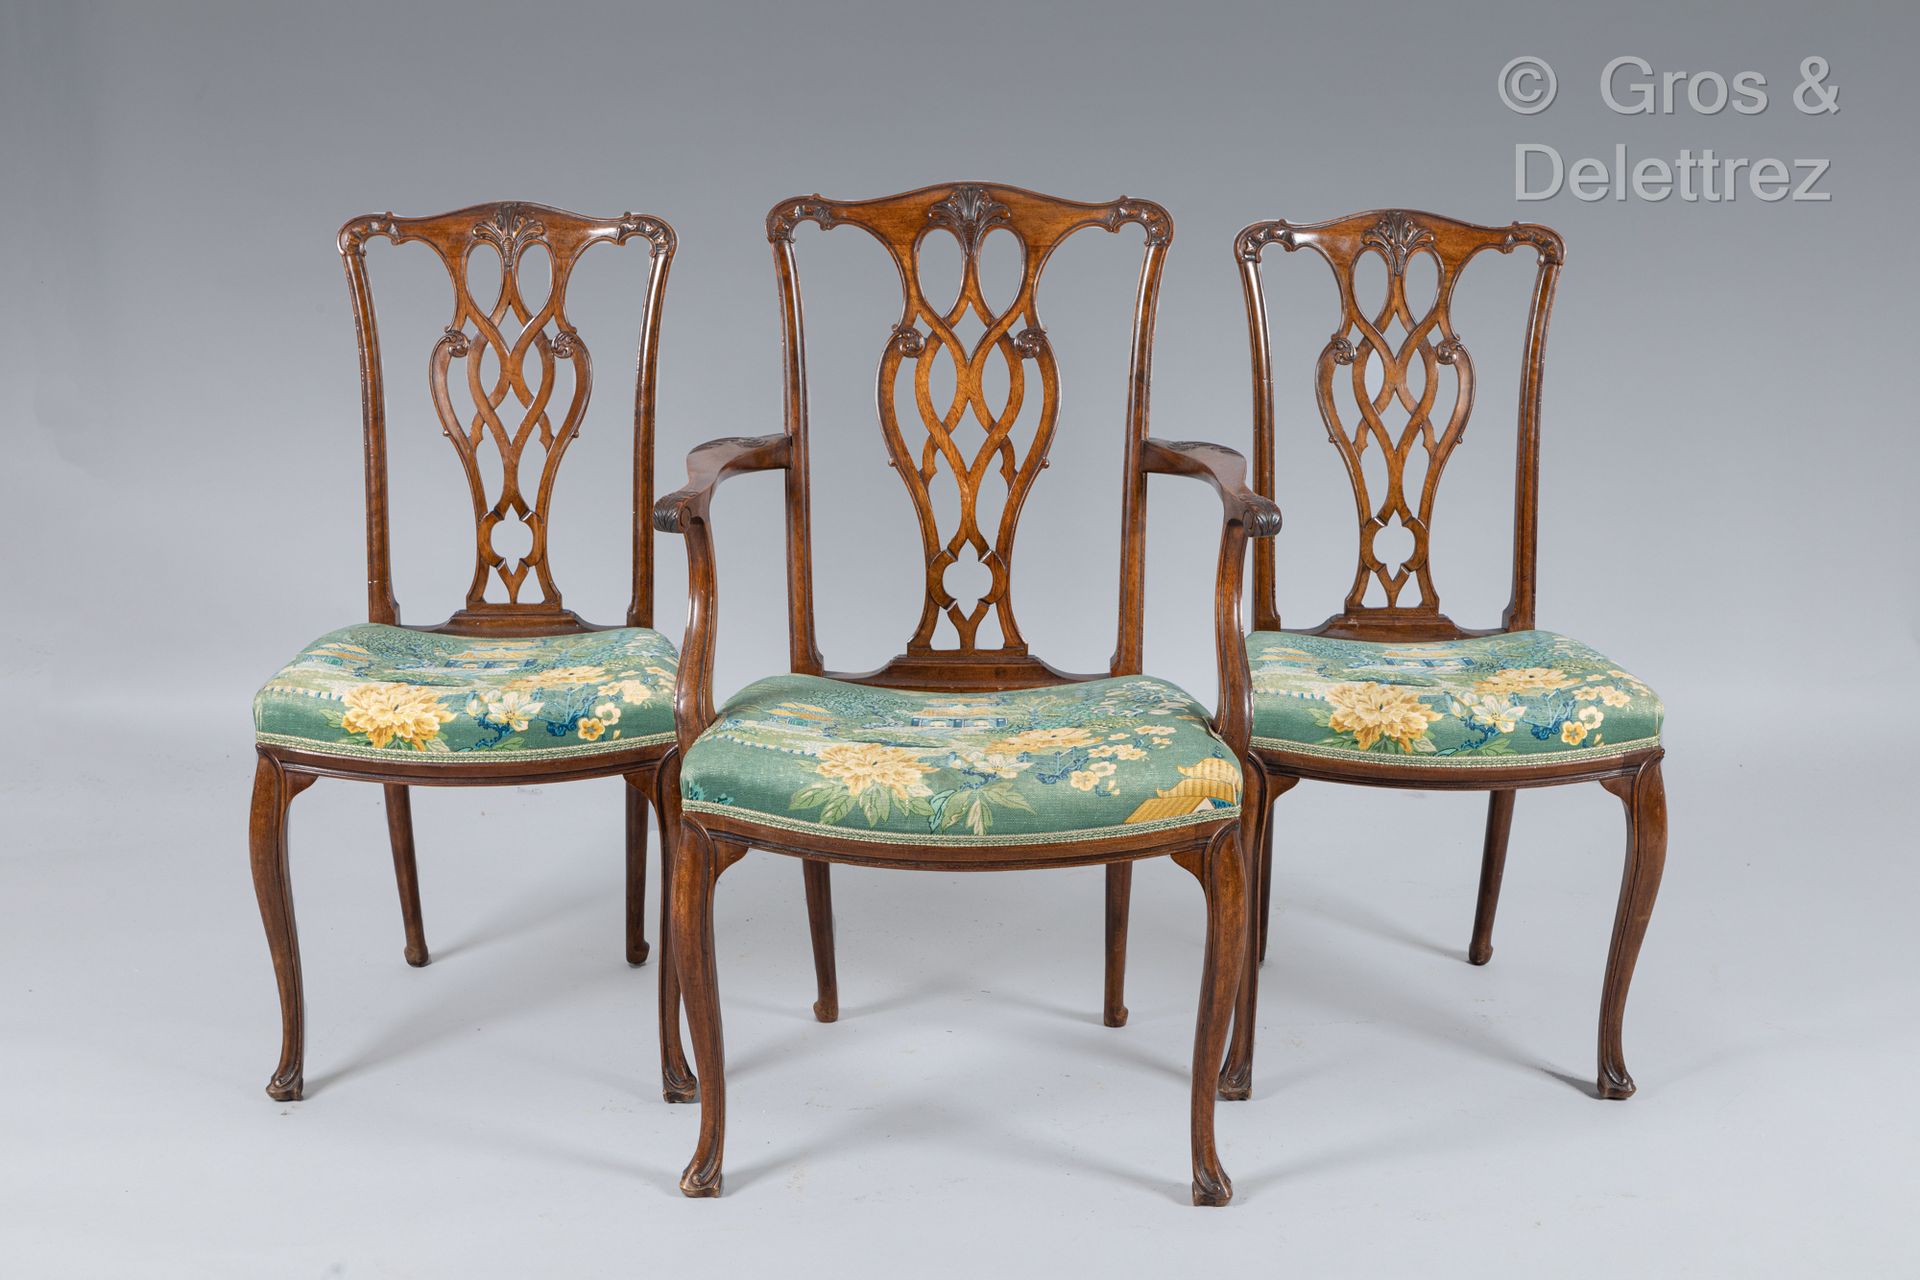 Null 一对扶手椅和四把椅子是天然木制的，背部有镂空雕刻的刺桐叶。他们站在略带拱形的腿上。
瑞典，19世纪
扶手椅高度：92厘米 椅子高度：86厘米